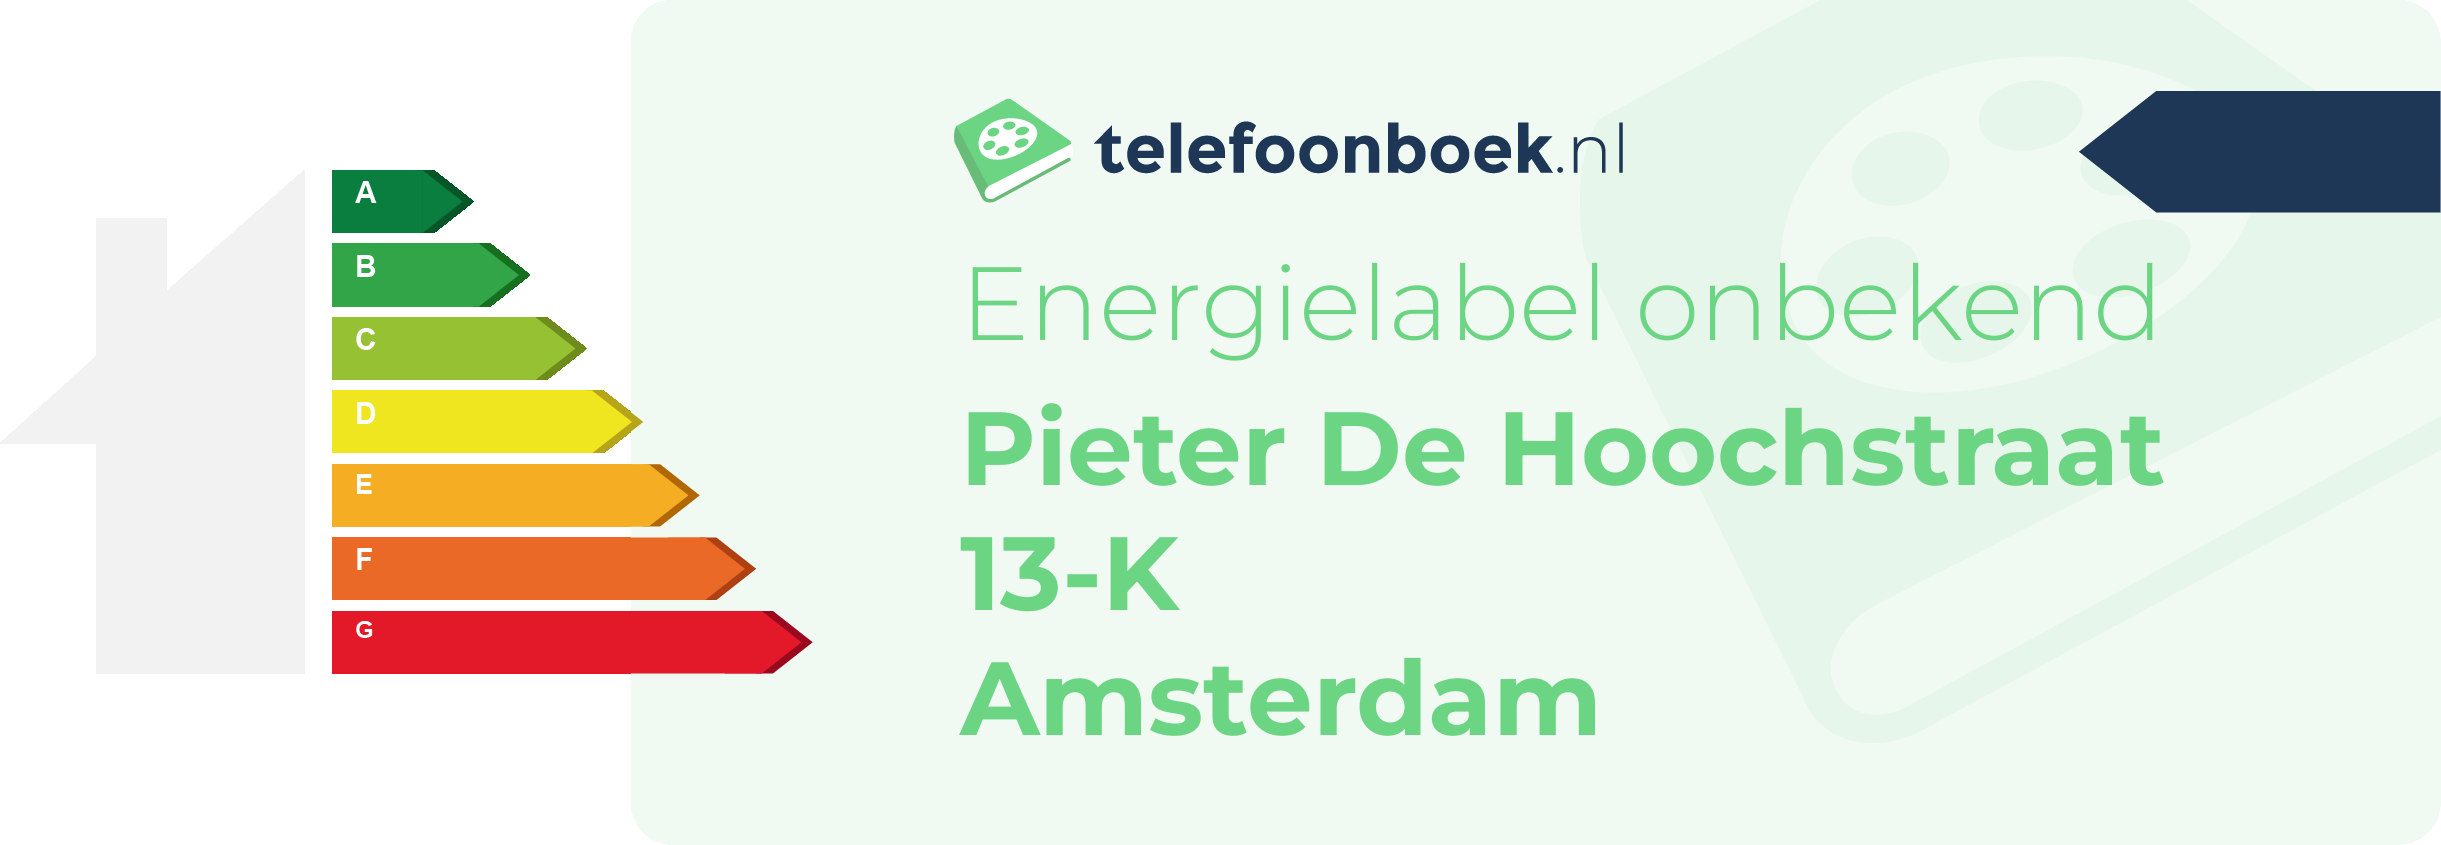 Energielabel Pieter De Hoochstraat 13-K Amsterdam